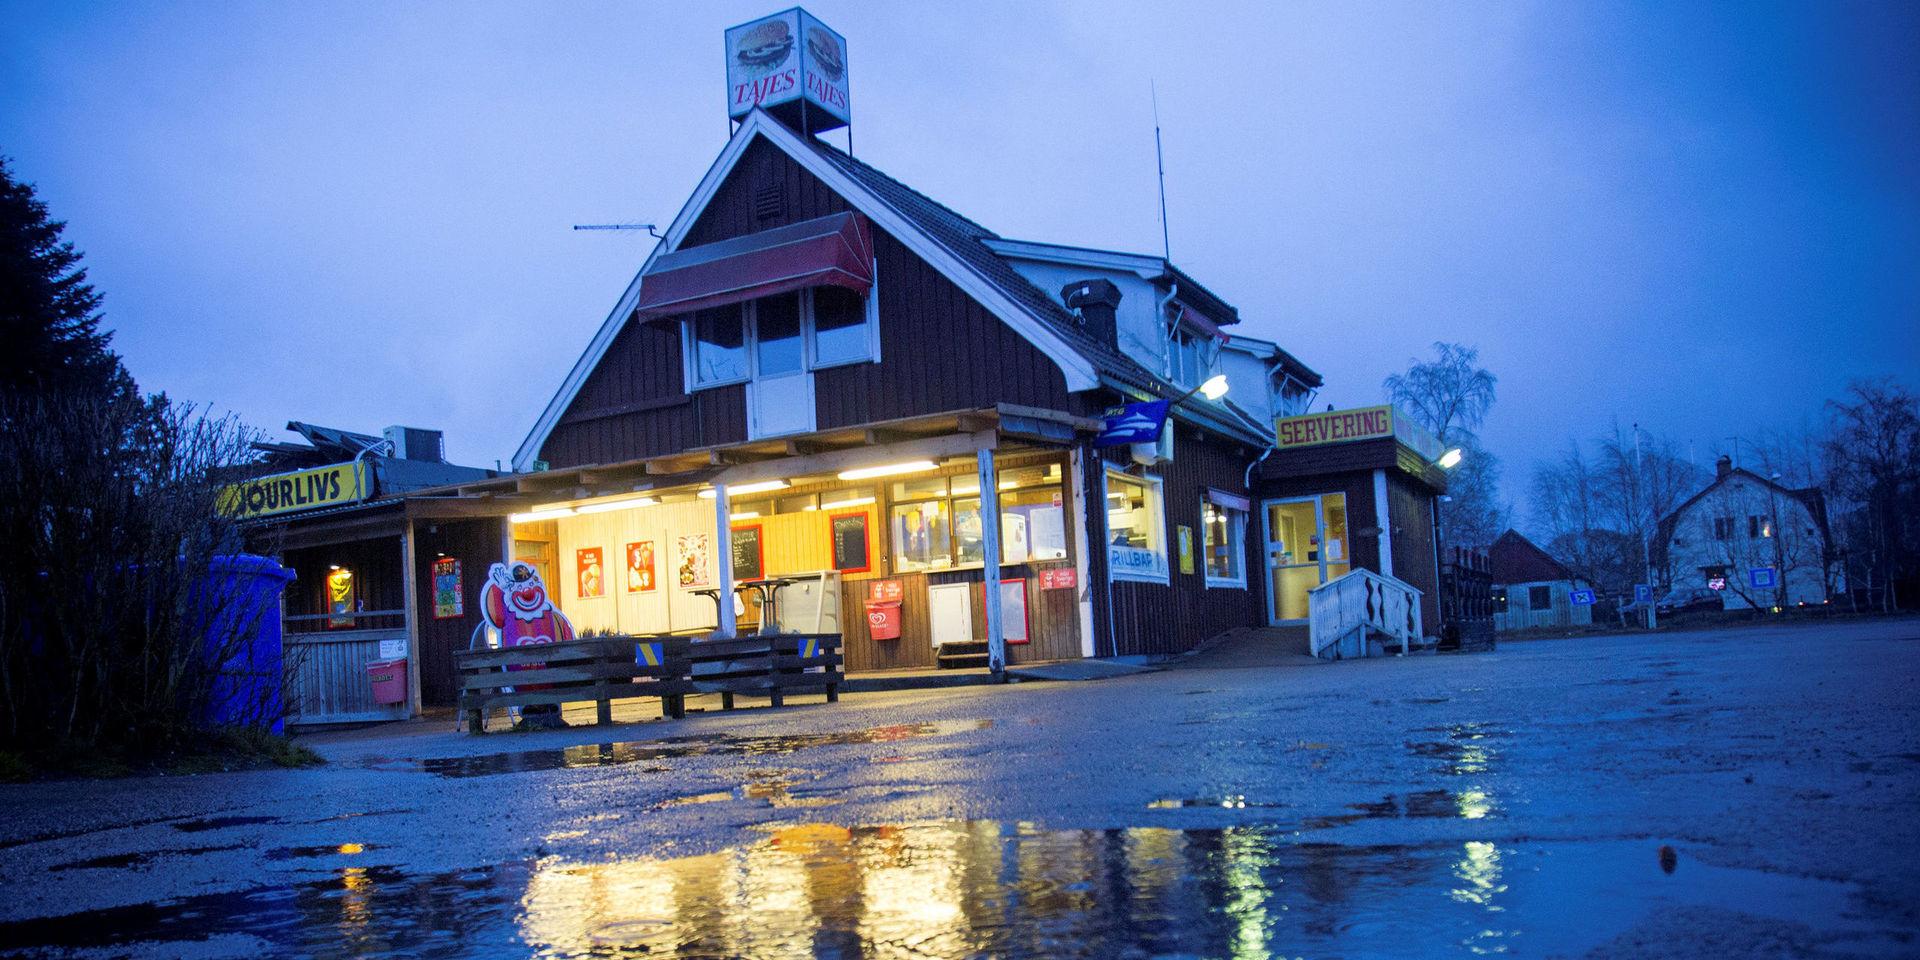 Tajes gatukök i Våxtorp stängdes i början av året. Nu har bolaget begärts i konkurs.